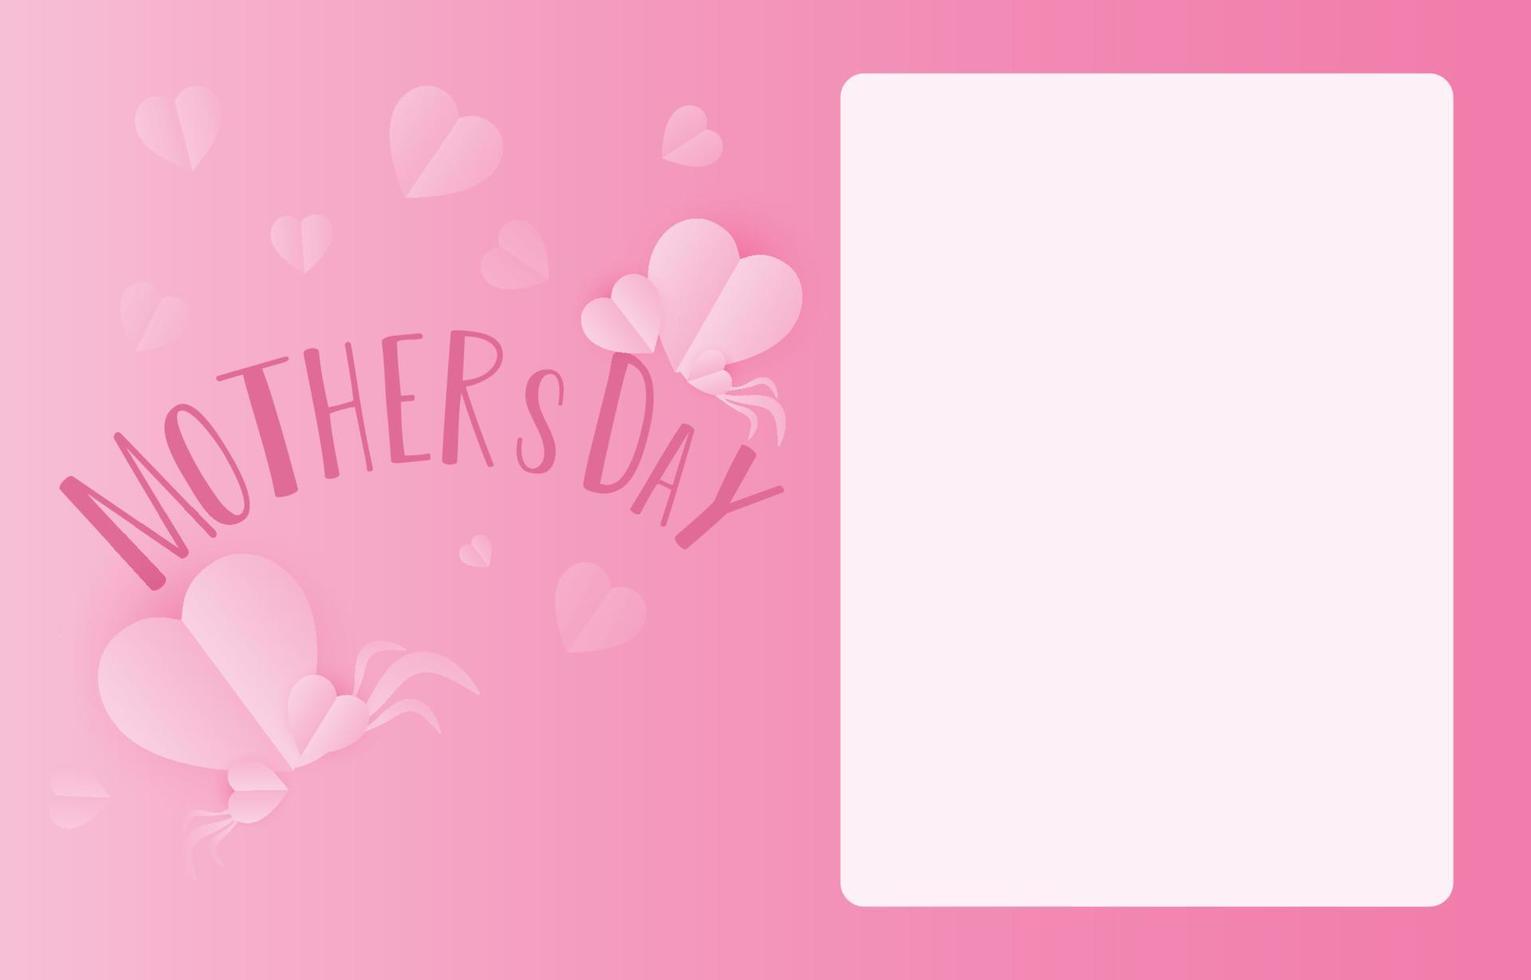 dia das mães cartão banner vetor com 3d voando corações rosa corte de papel e banco de papel .symbol de amor e cartas manuscritas no fundo rosa.